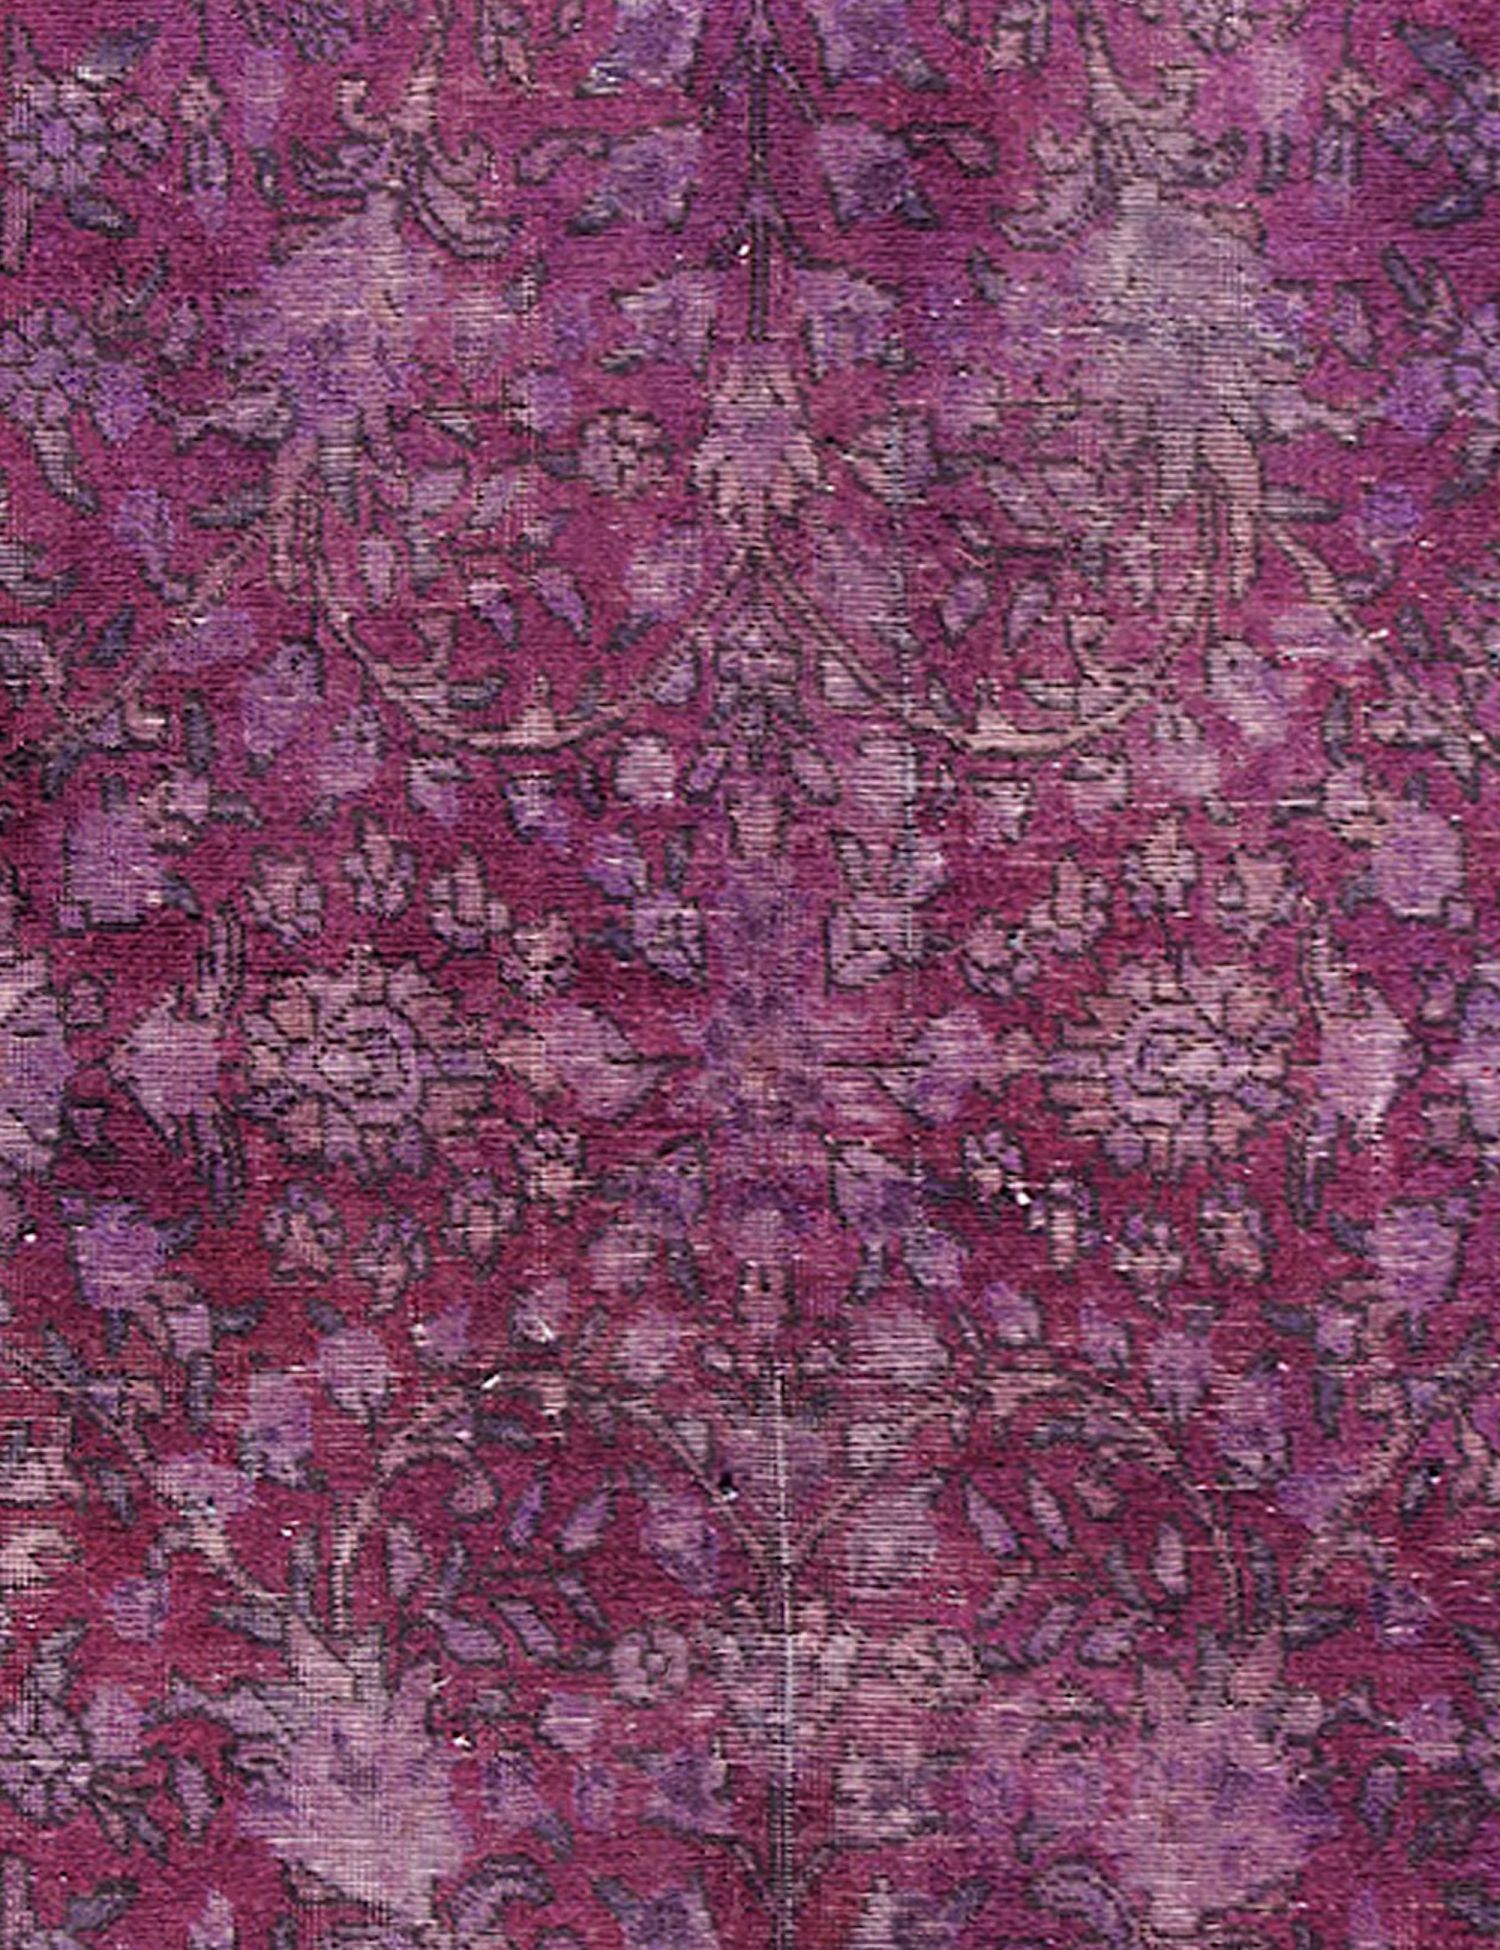 Persischer Vintage Teppich  lila <br/>240 x 150 cm